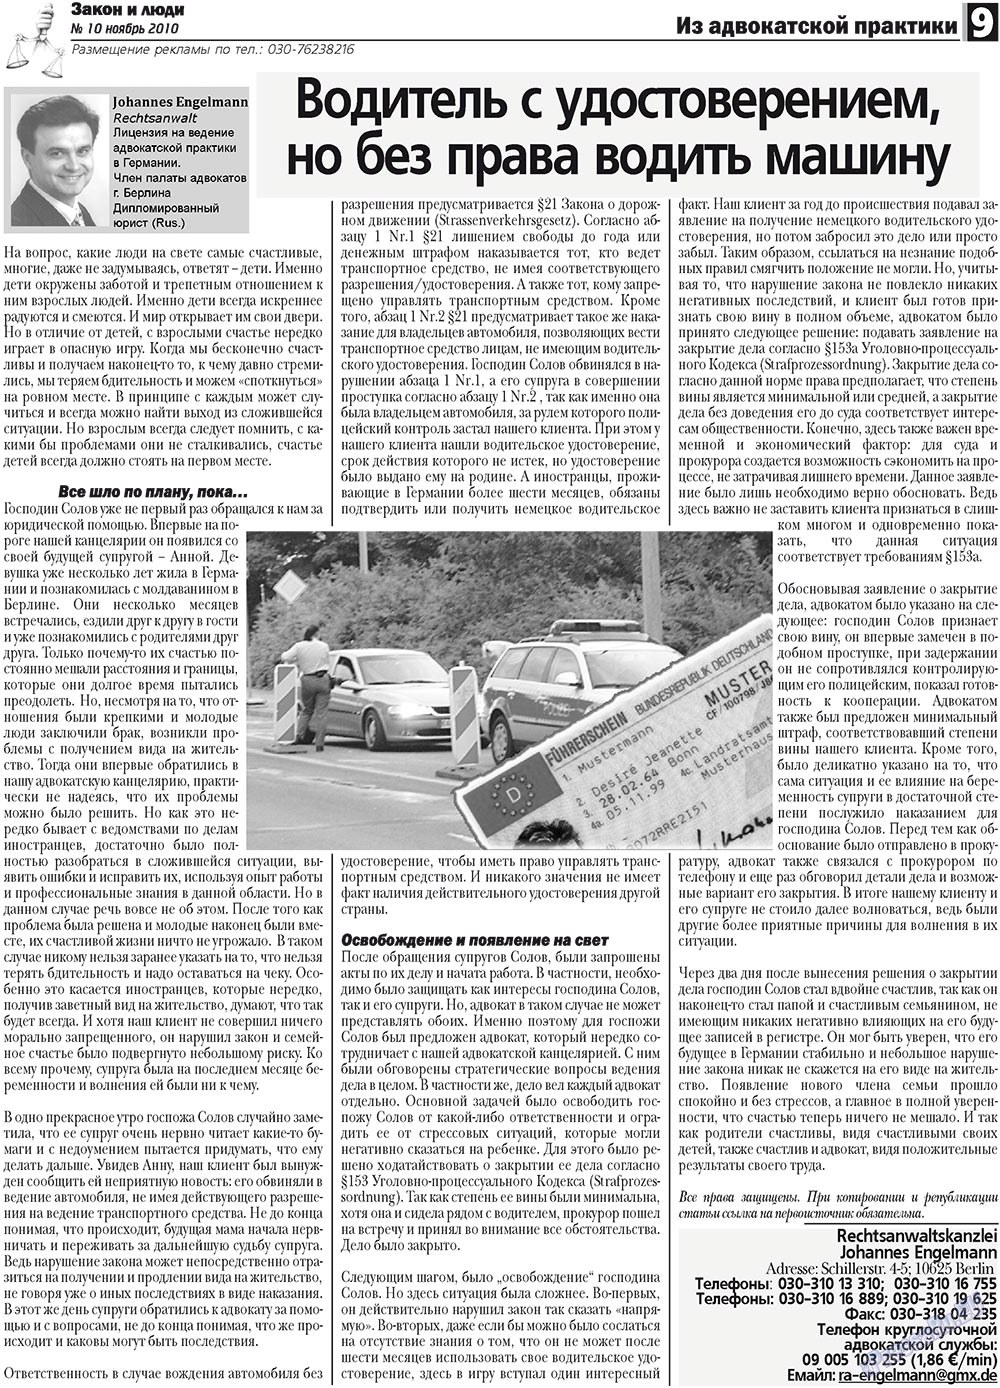 Закон и люди, газета. 2010 №10 стр.9